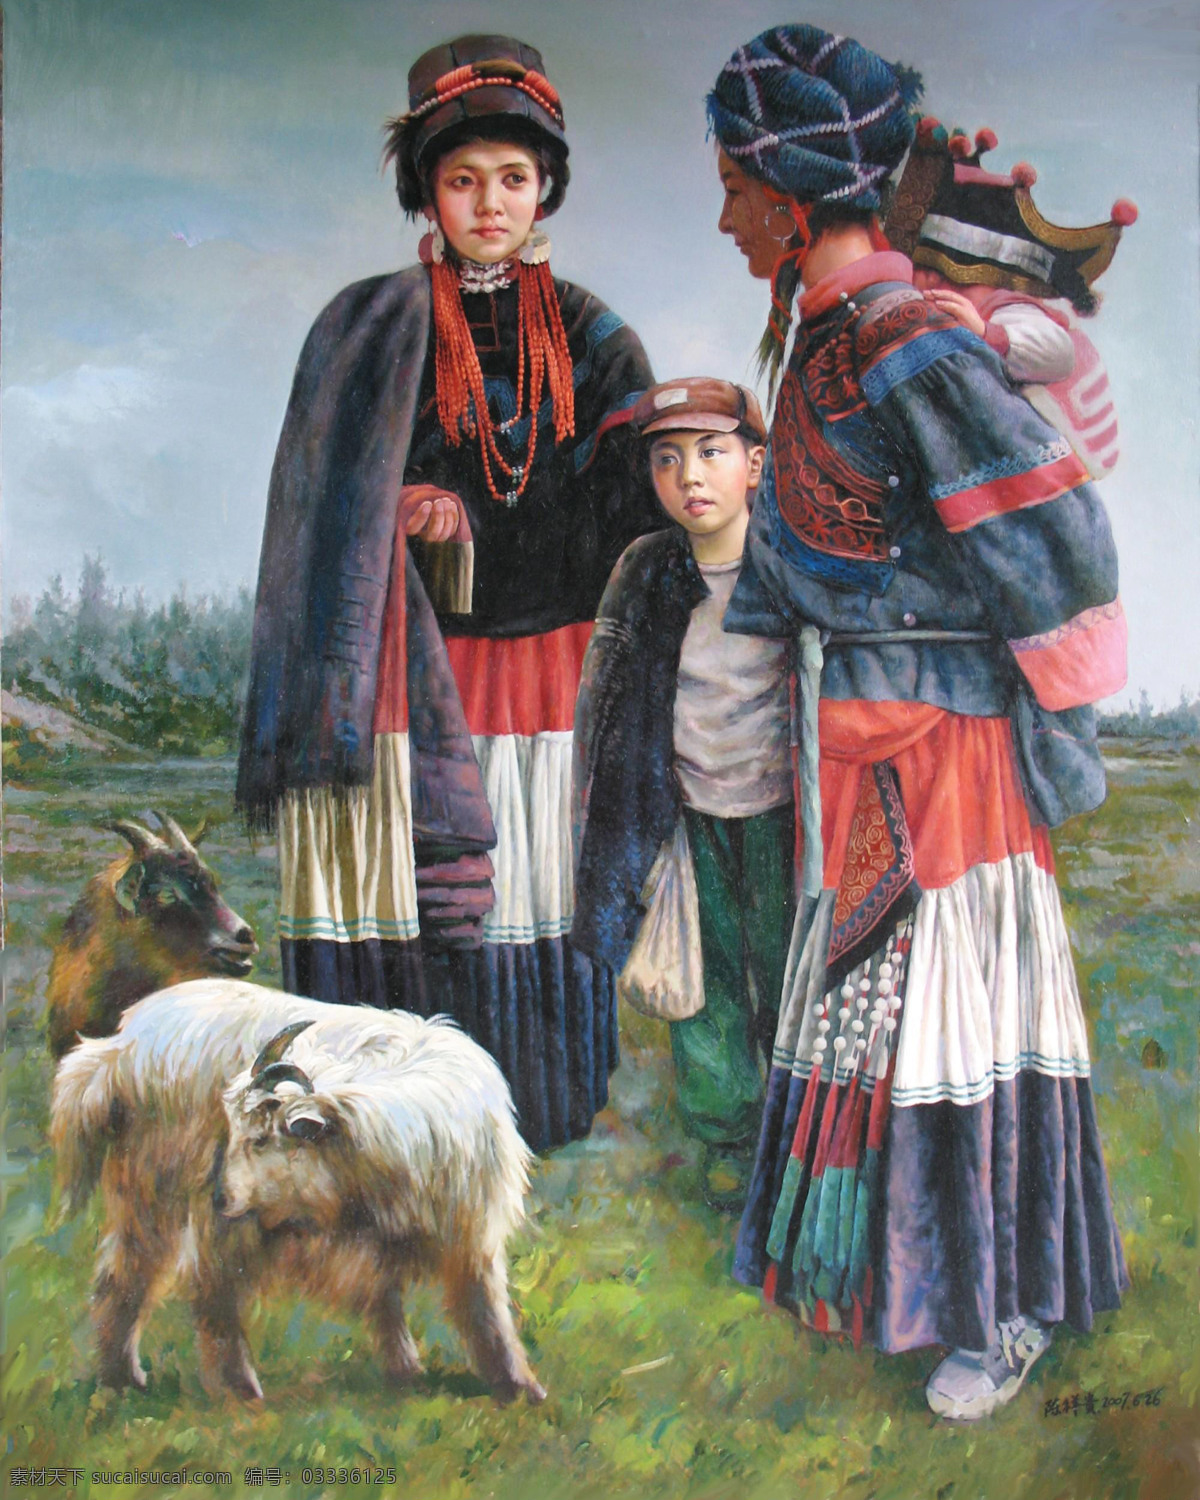 情系大凉山 美术 绘画 油画 写实油画 男人 女人 儿童 少年 彝族人 动作 表情 姿势 服装 山地 羊 油画艺术 油画作品16 绘画书法 文化艺术